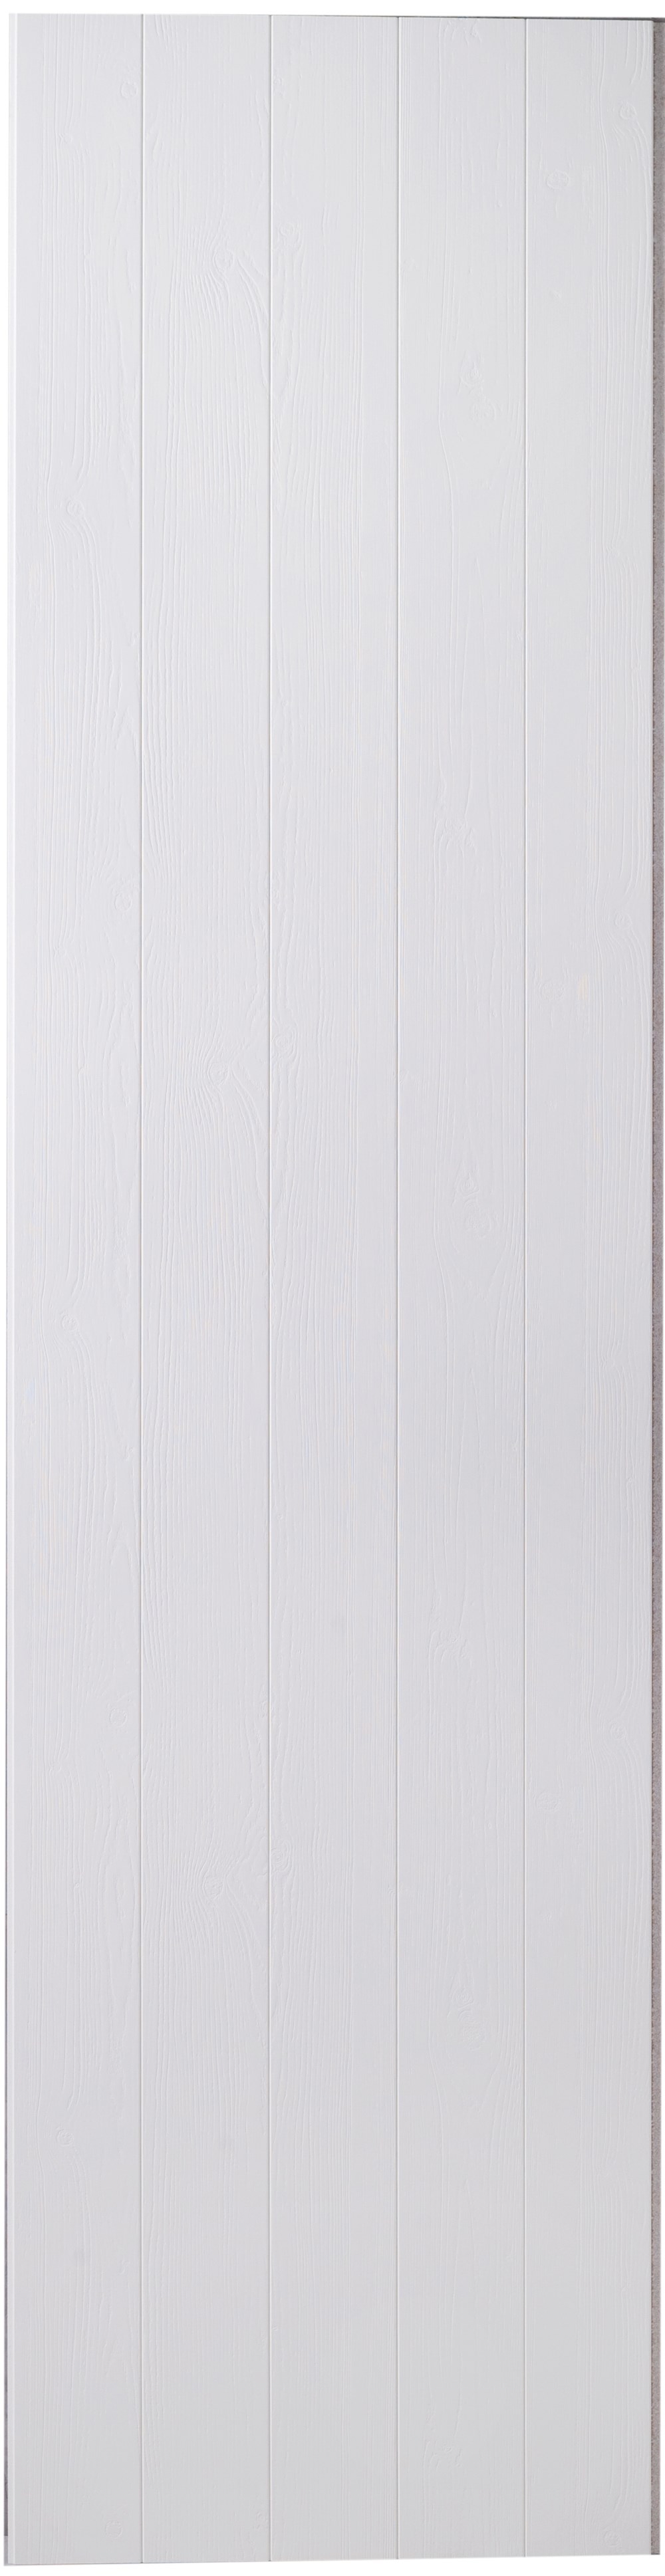 HU-Wood-wall-White.jpg